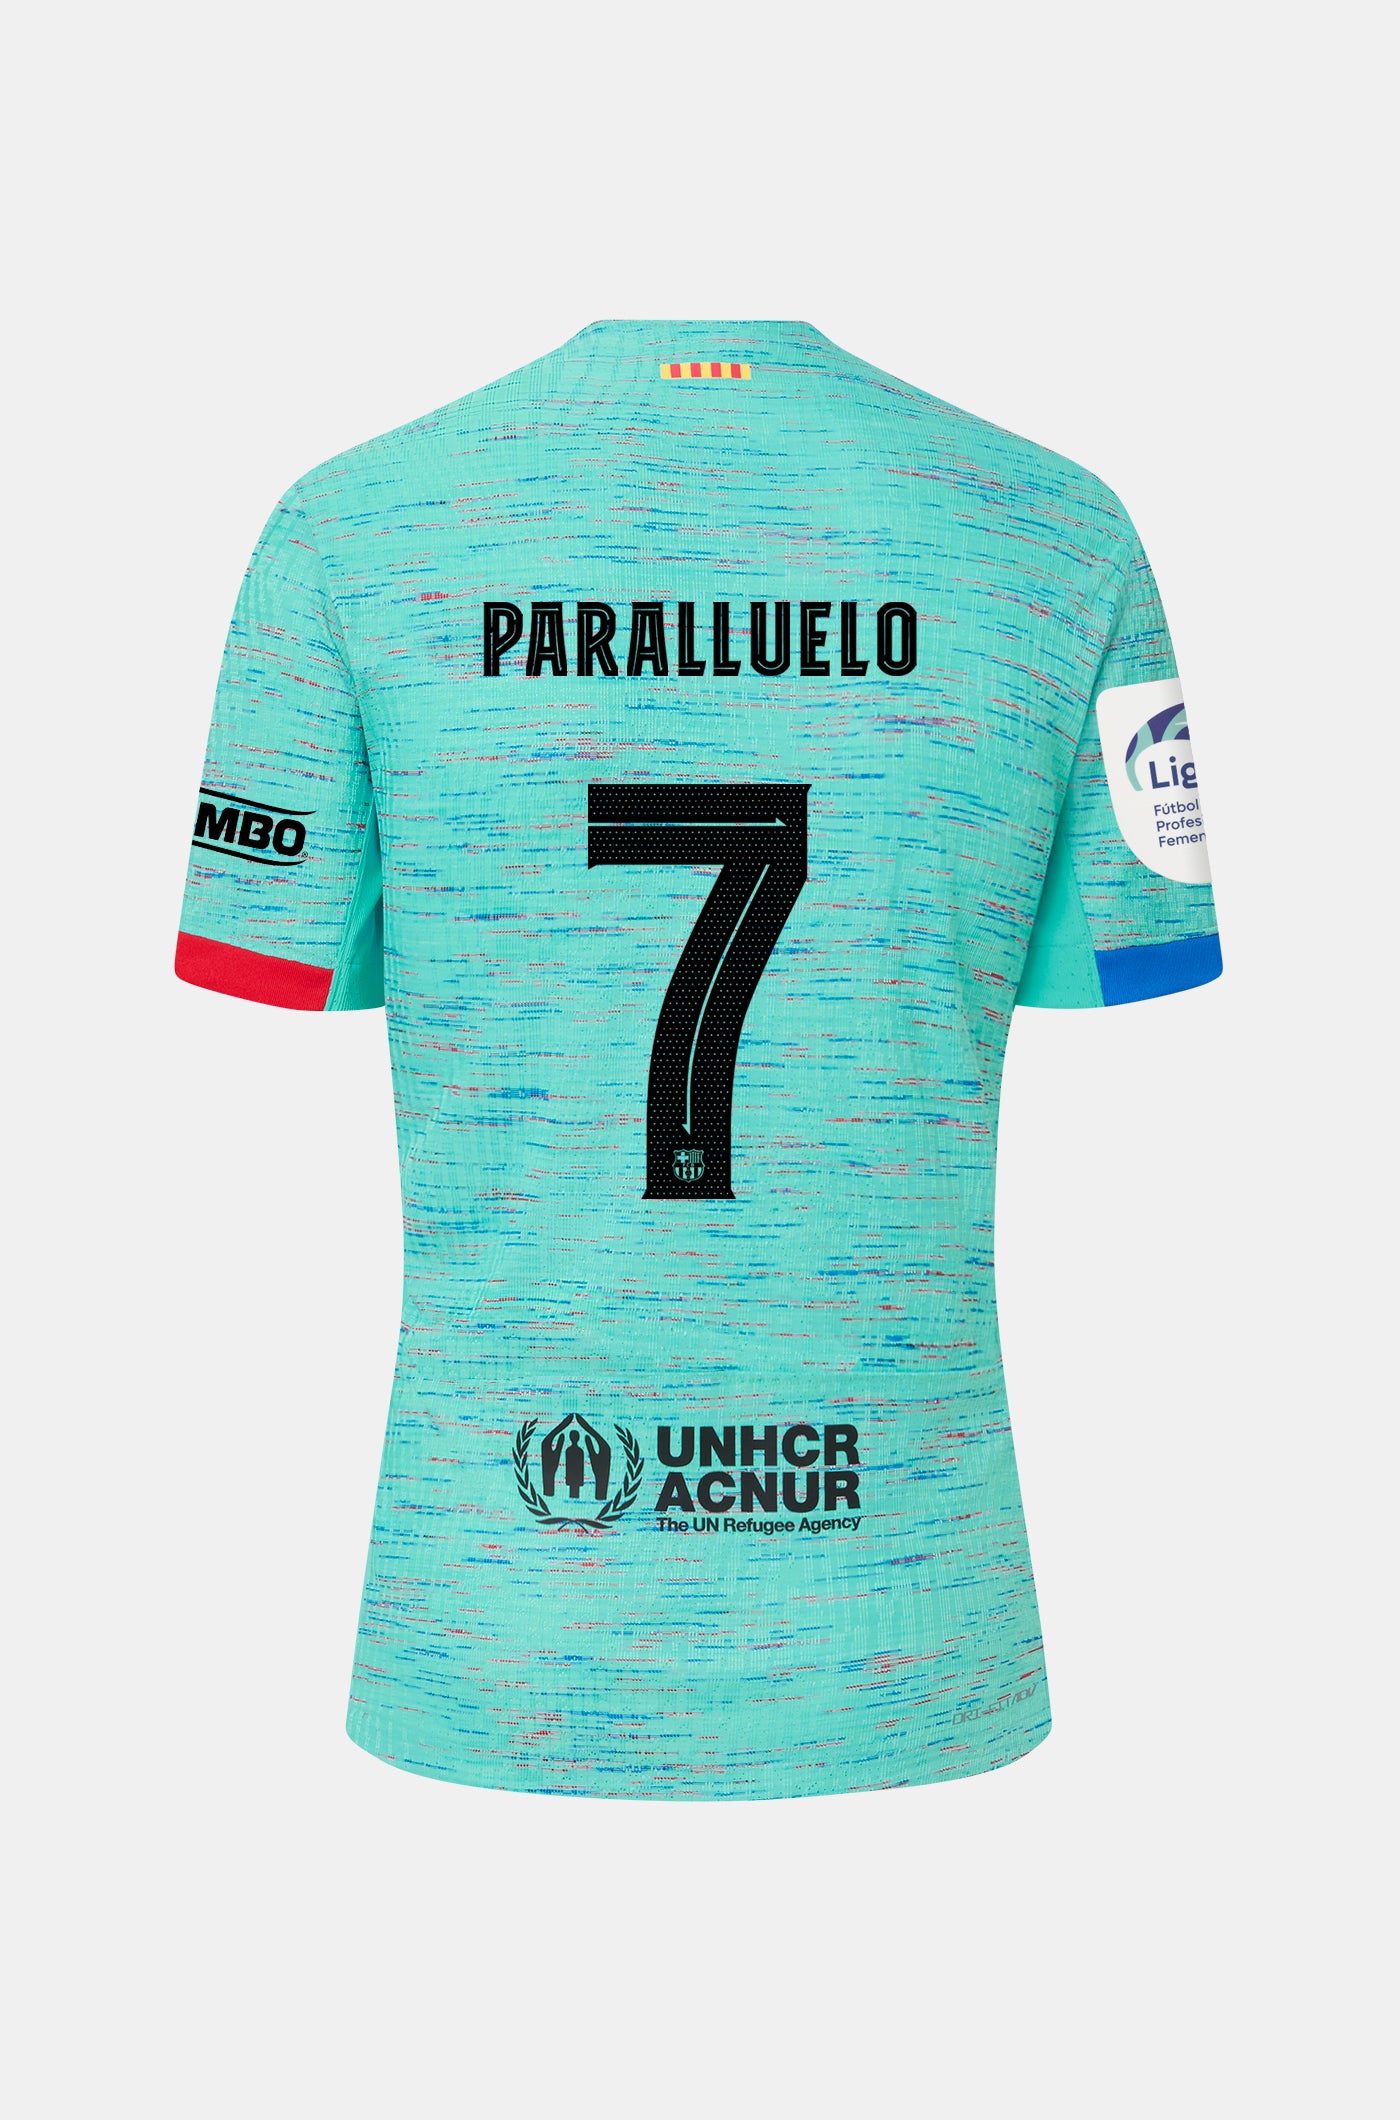 Liga F FC Barcelona third Shirt 23/24 Player’s Edition - PARALLUELO